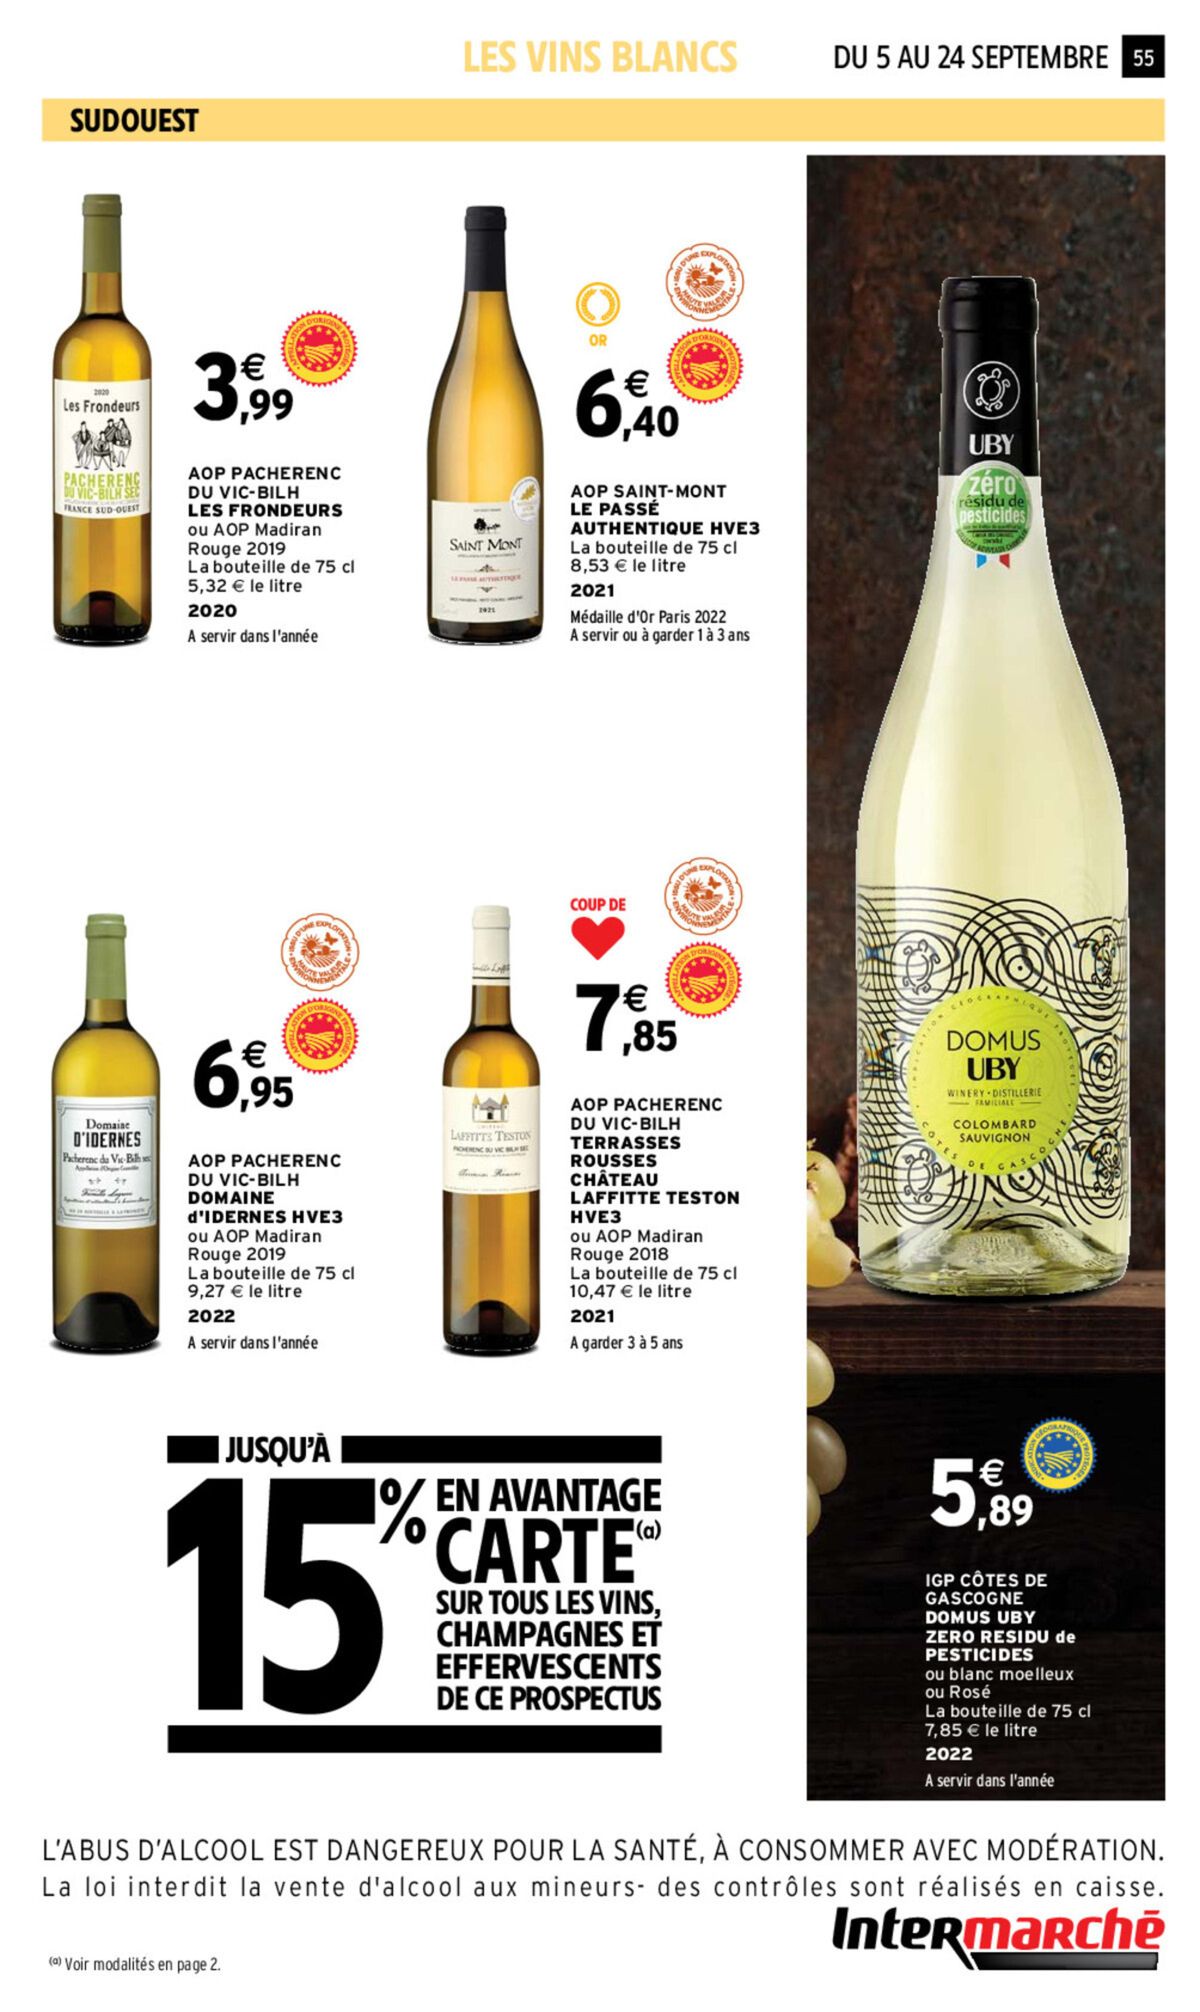 Catalogue Foire aux vins, page 00053